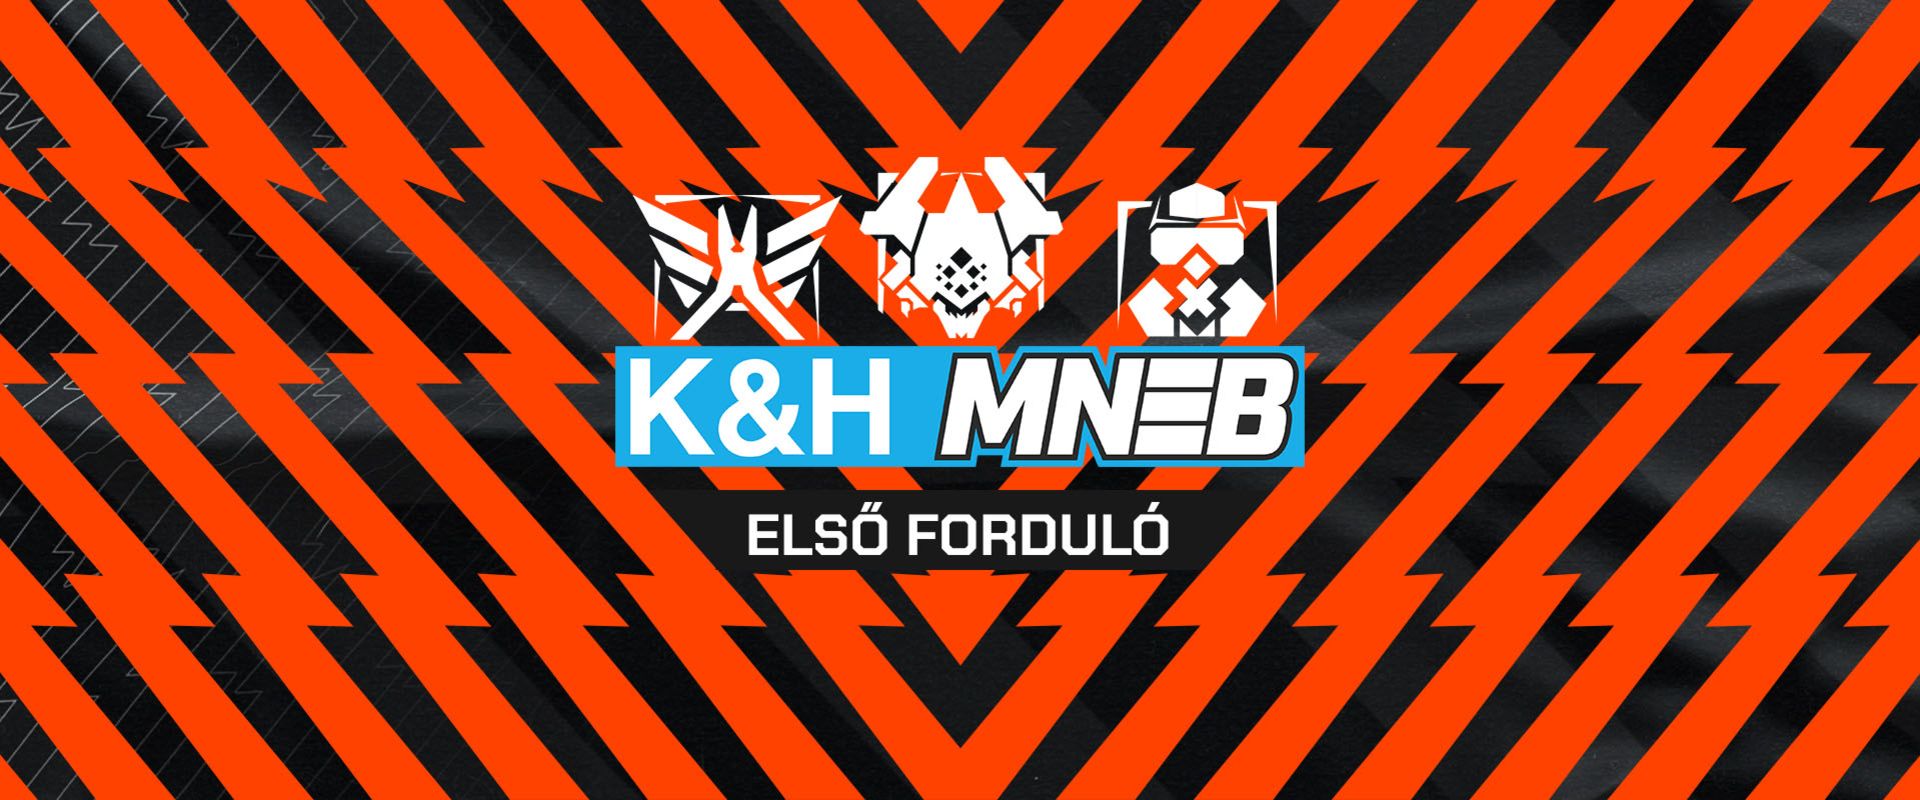 K&H MNEB S2: Mutatjuk az első osztályozó kupa továbbjutóit!